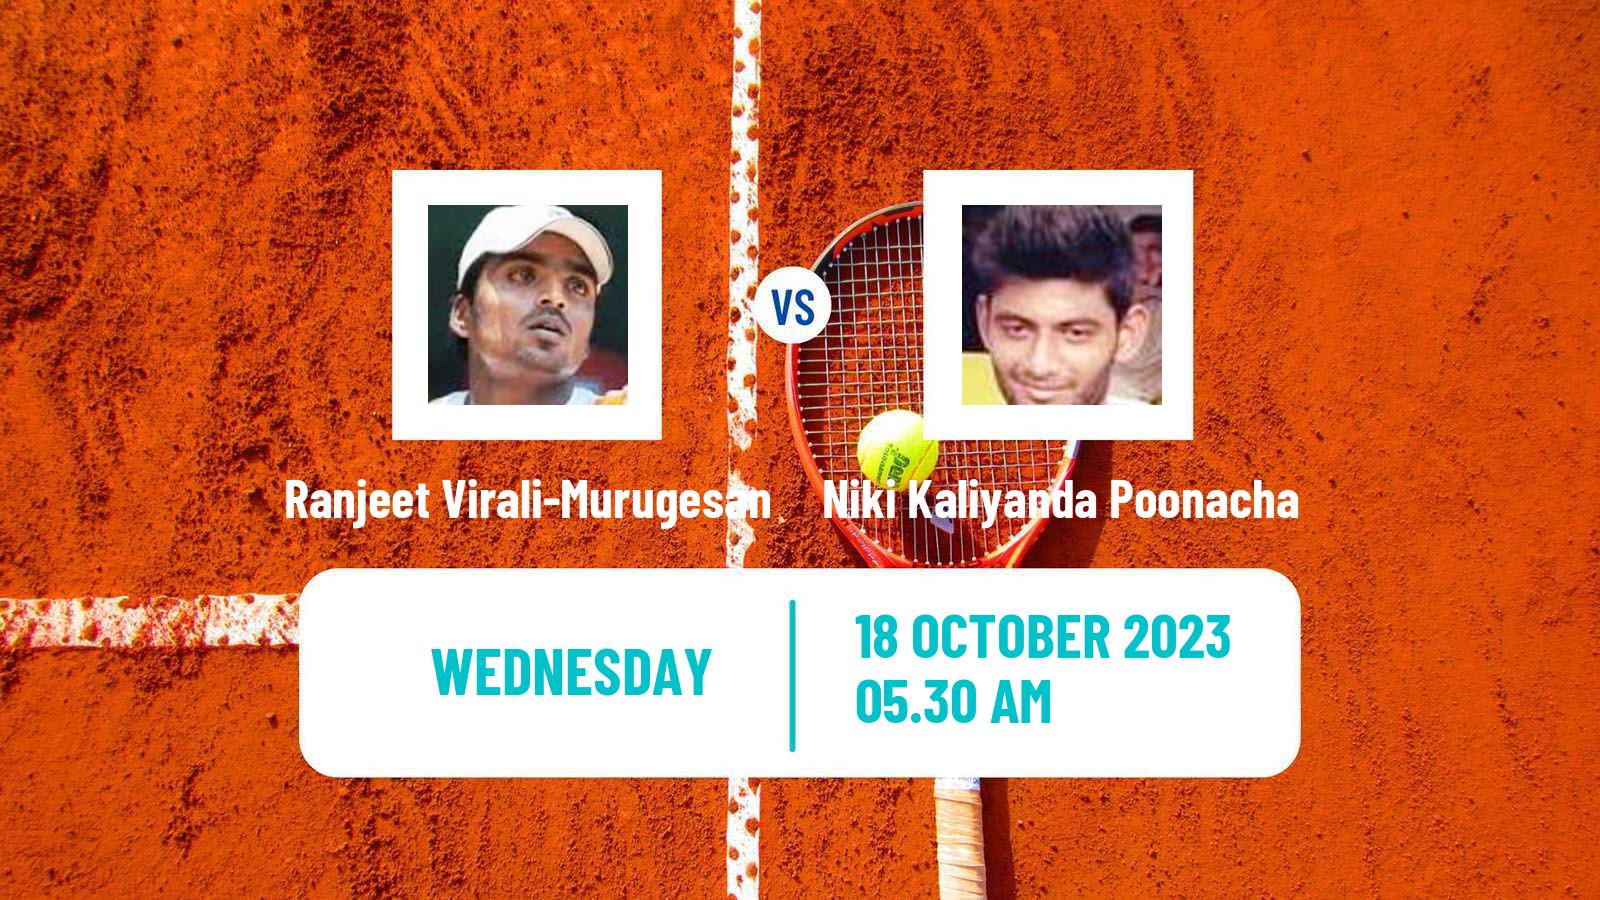 Tennis ITF M25 Dharwad Men Ranjeet Virali-Murugesan - Niki Kaliyanda Poonacha